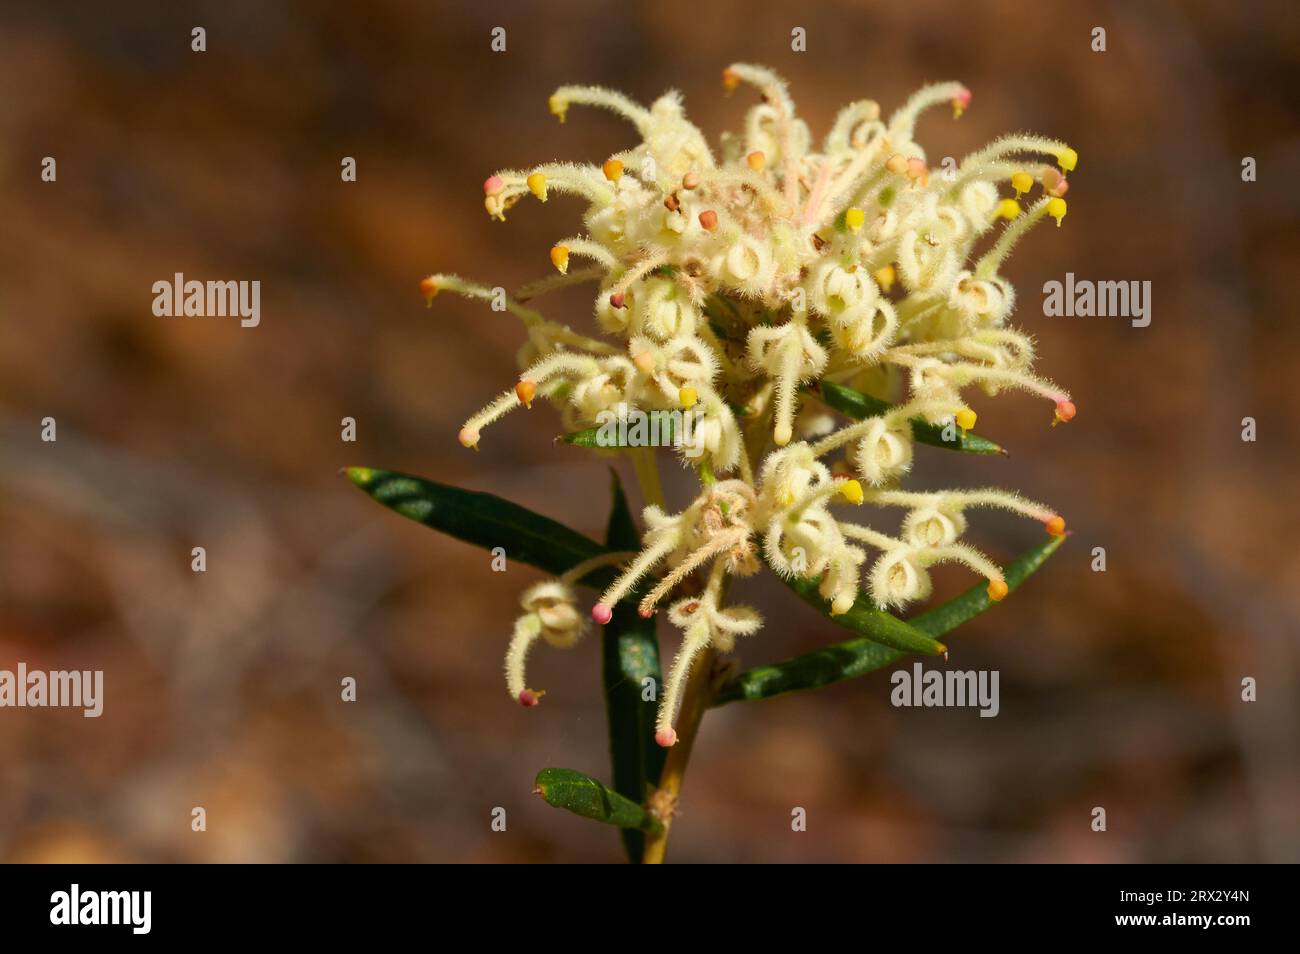 Grevillea, Grevillea pilulifera, una especie de flores silvestres endémica del suroeste de Australia Occidental. Foto de stock